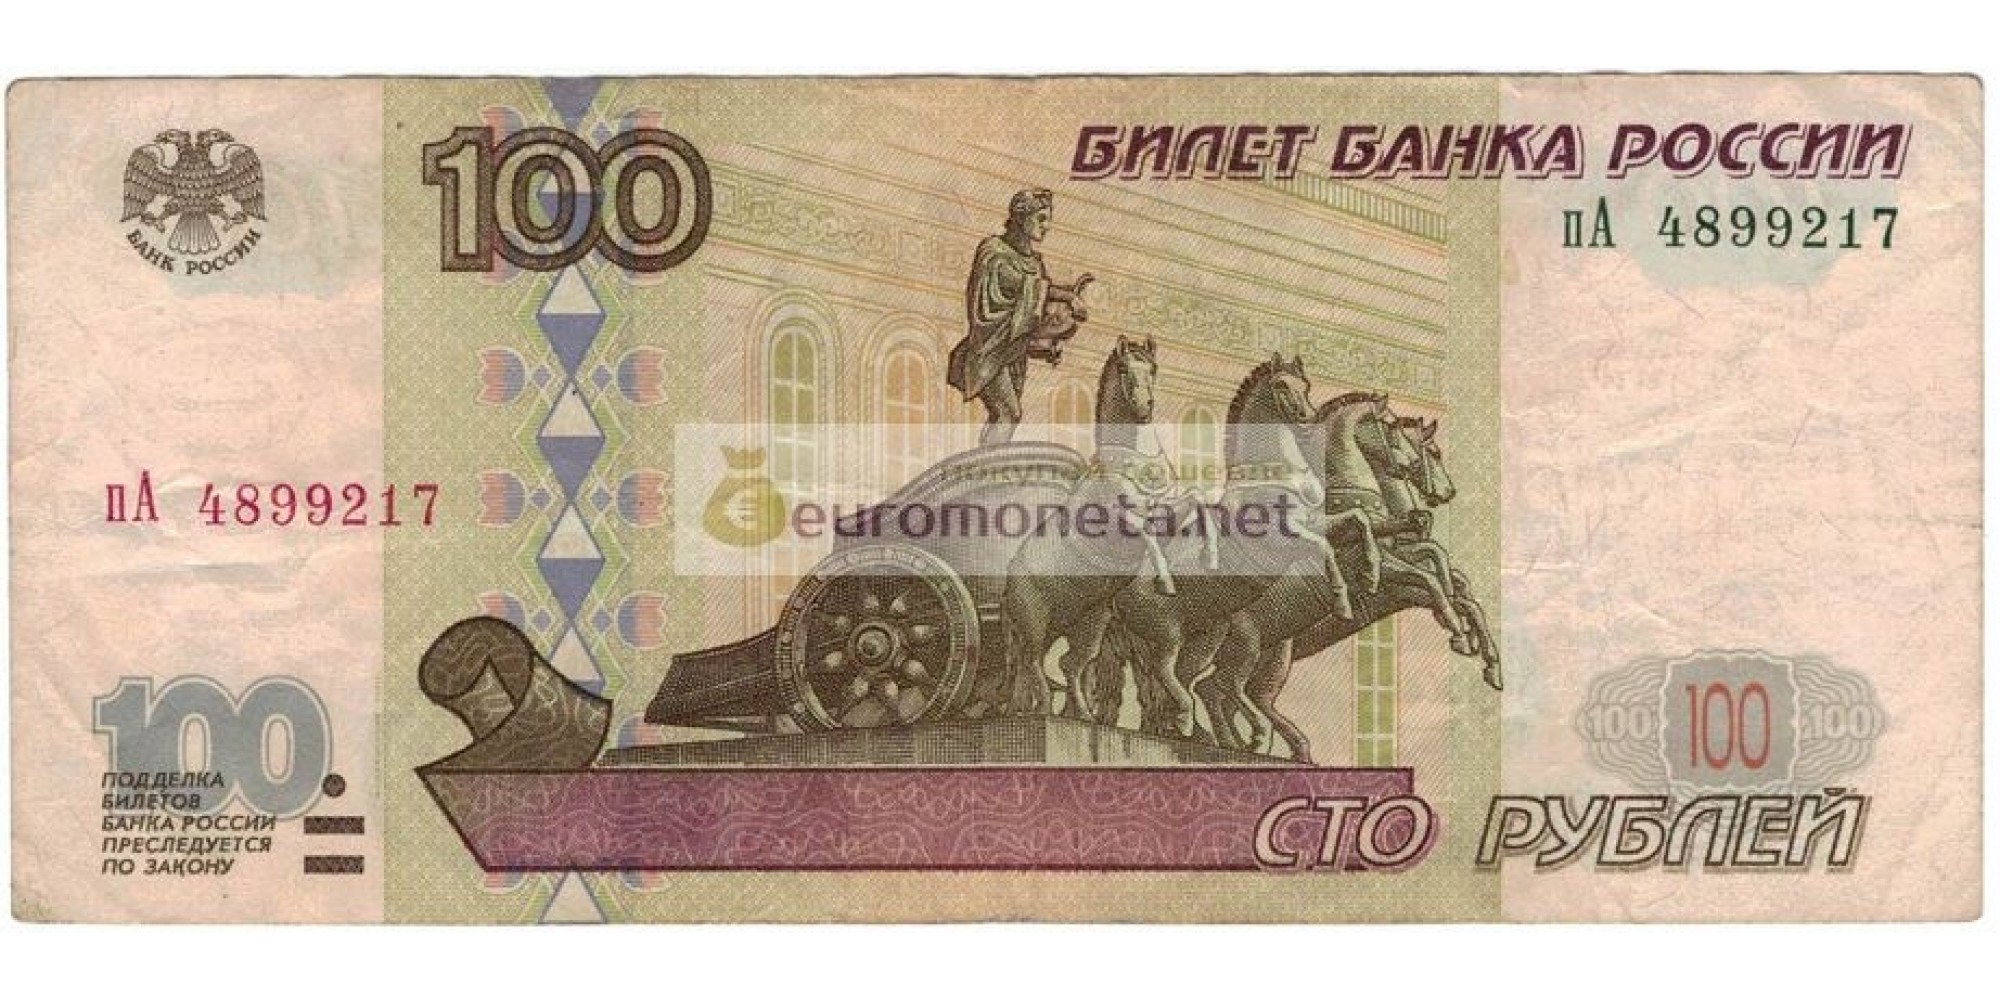 Россия 100 рублей 1997 год модификация 2001 год серия пА 4899217